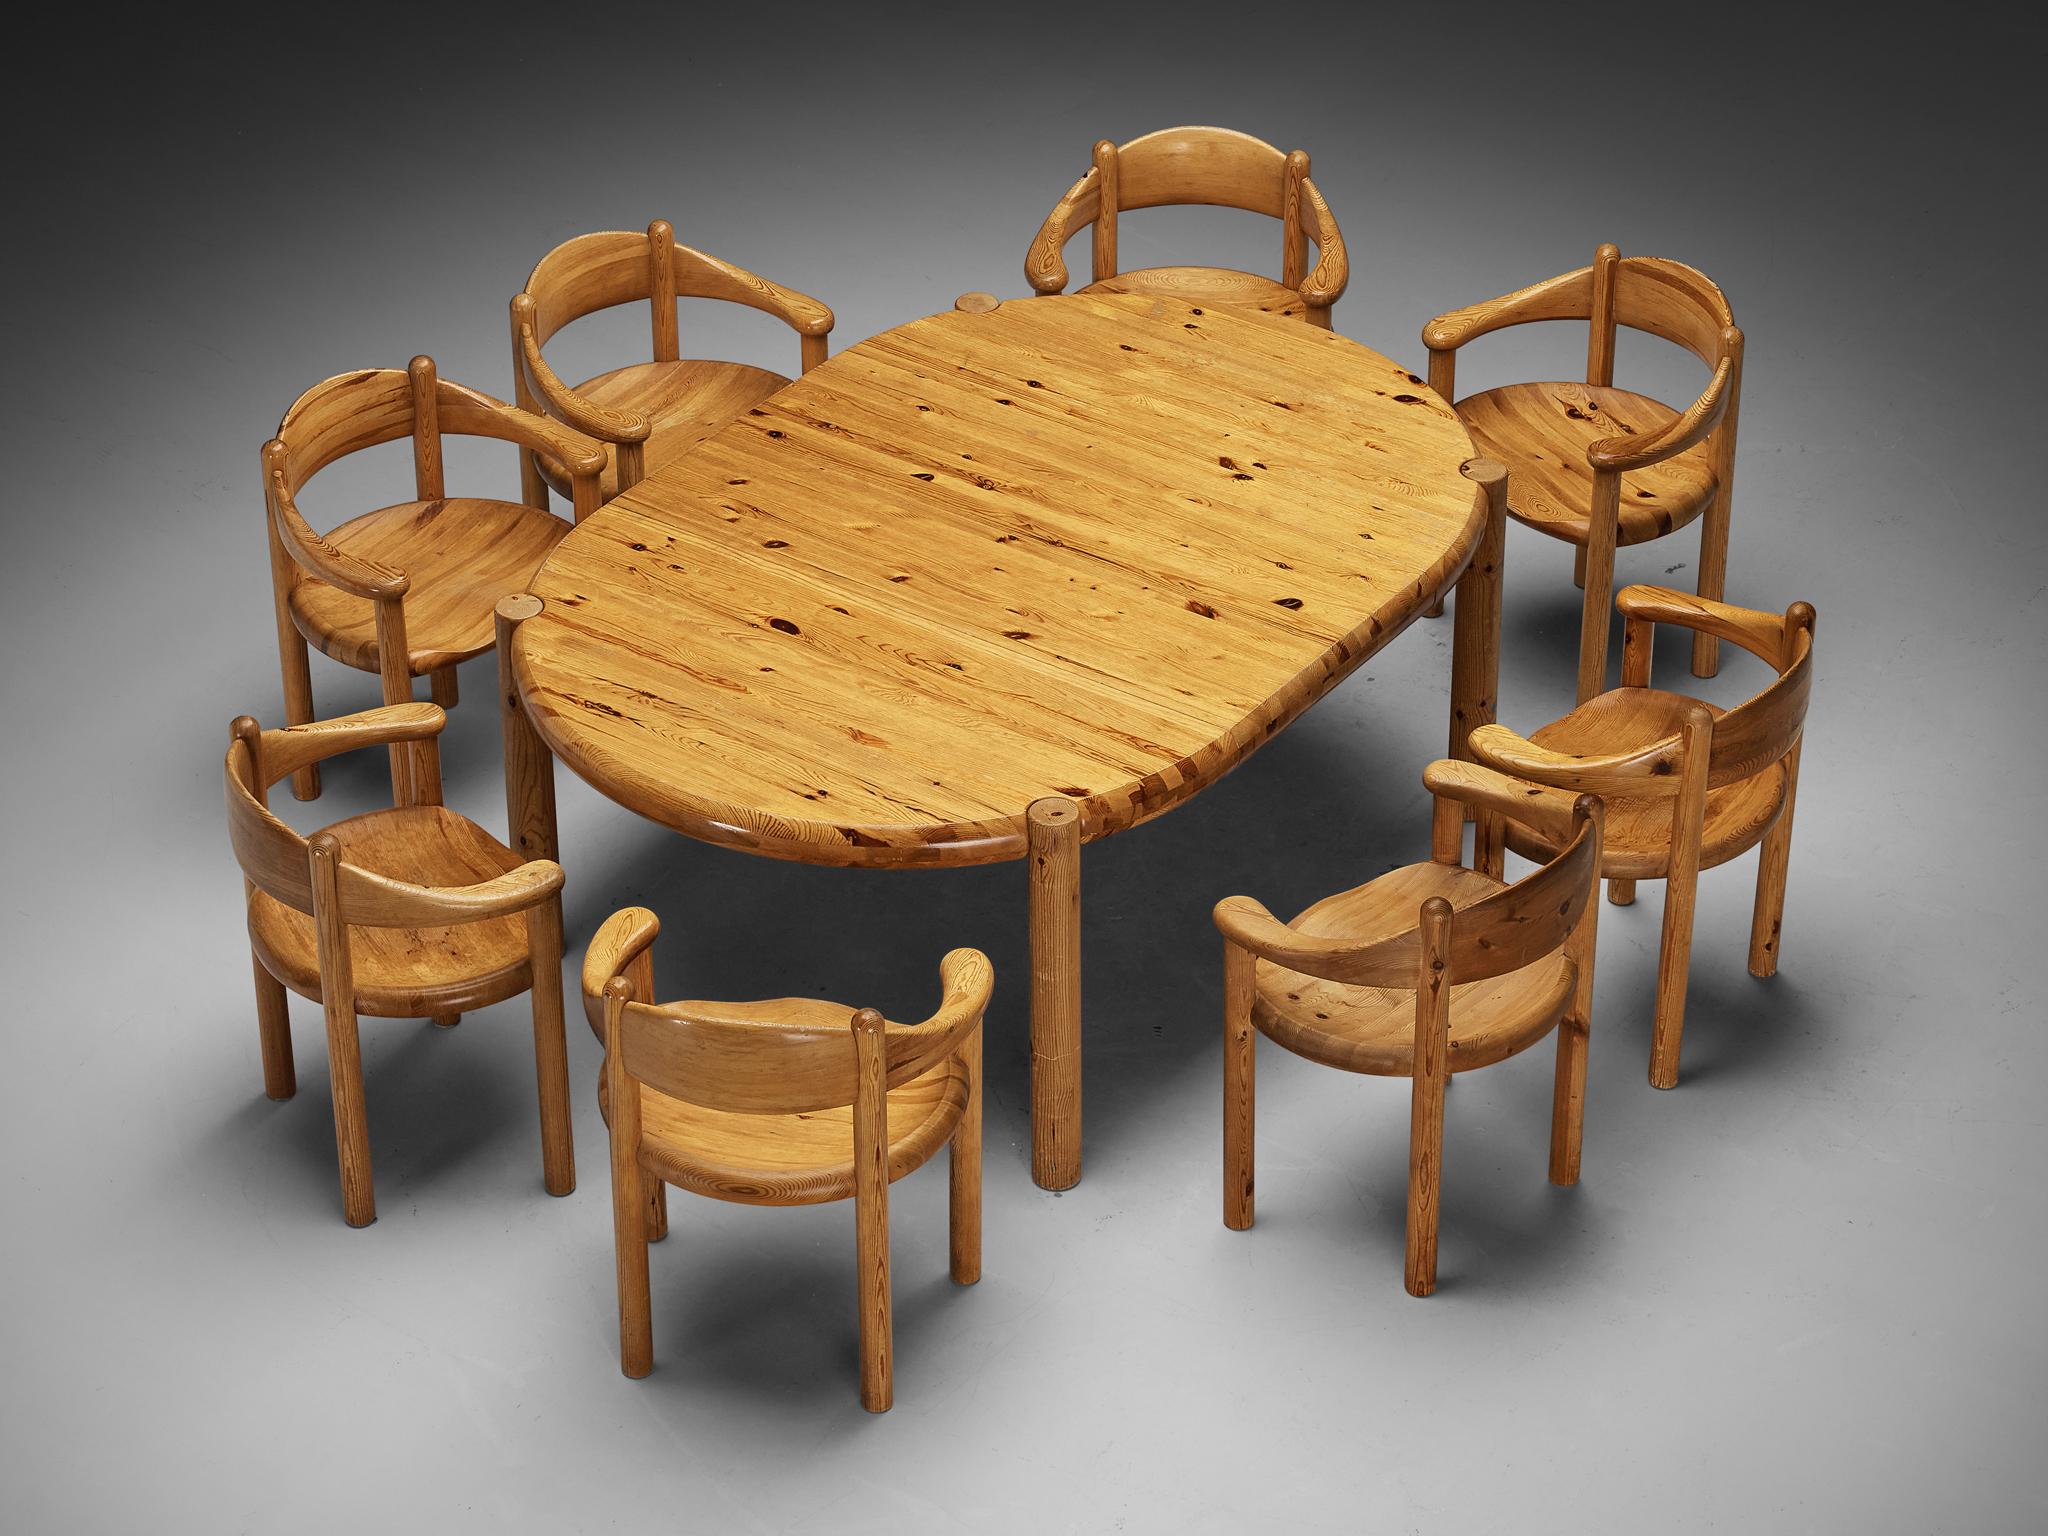 Rainer Daumiller, Esstischgarnitur mit acht Sesseln, Kiefer, Dänemark, 1970er Jahre.

Dieses Esszimmer-Set besteht aus einem ausziehbaren Esstisch und acht Esszimmerstühlen, entworfen von Rainer Daumiller. Der Tisch kann in zwei Versionen